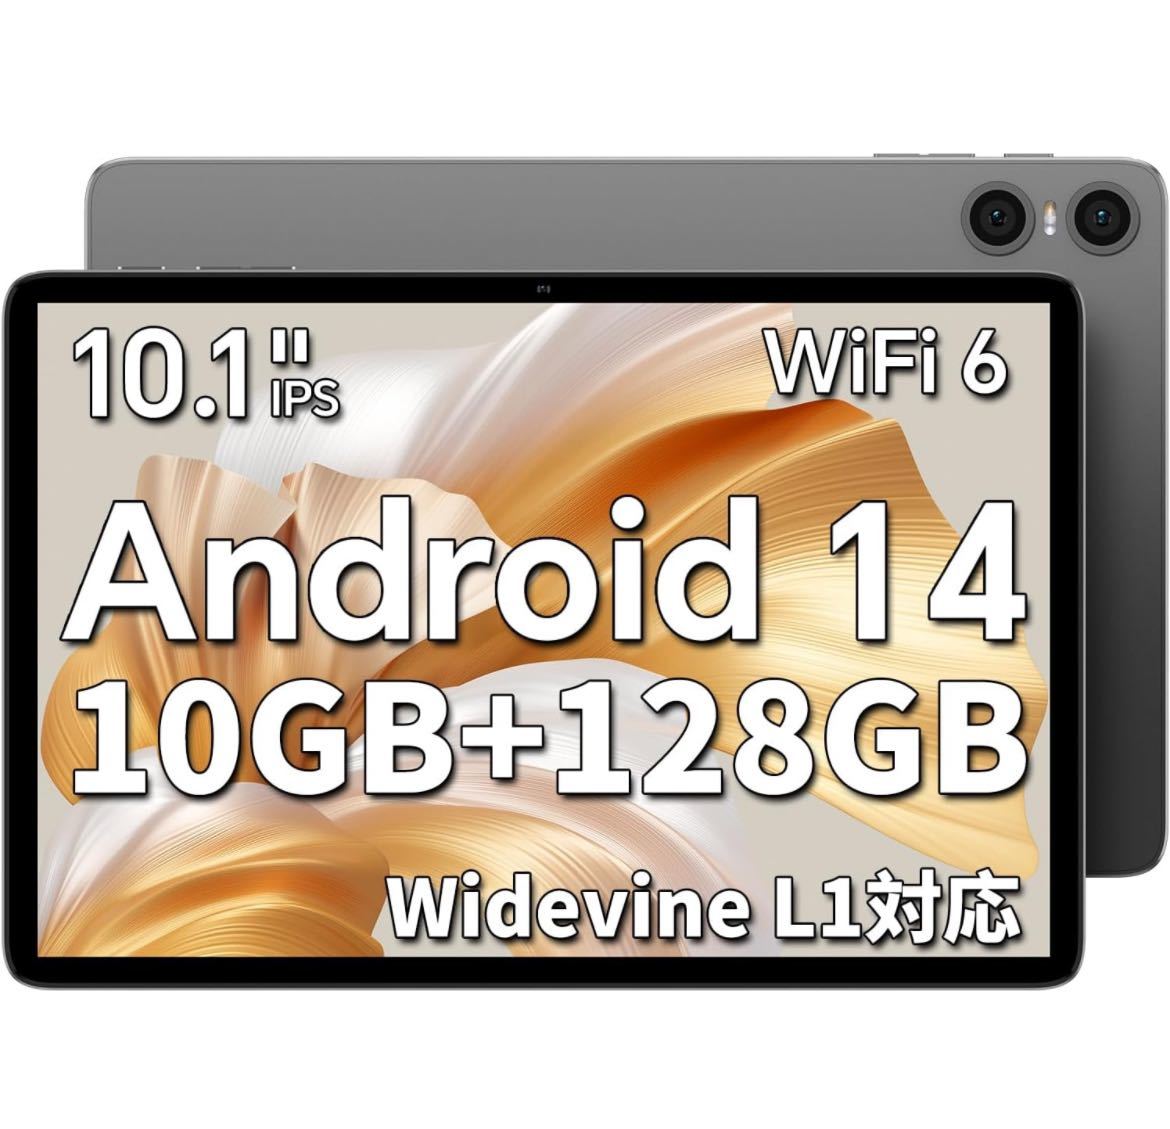 Android 14 タブレット タブレット 10インチ wi-fiモデル 10GB+128GB+1TB拡張 アンドロイド14タブレット 8コアCPU 1.8Ghz_画像1